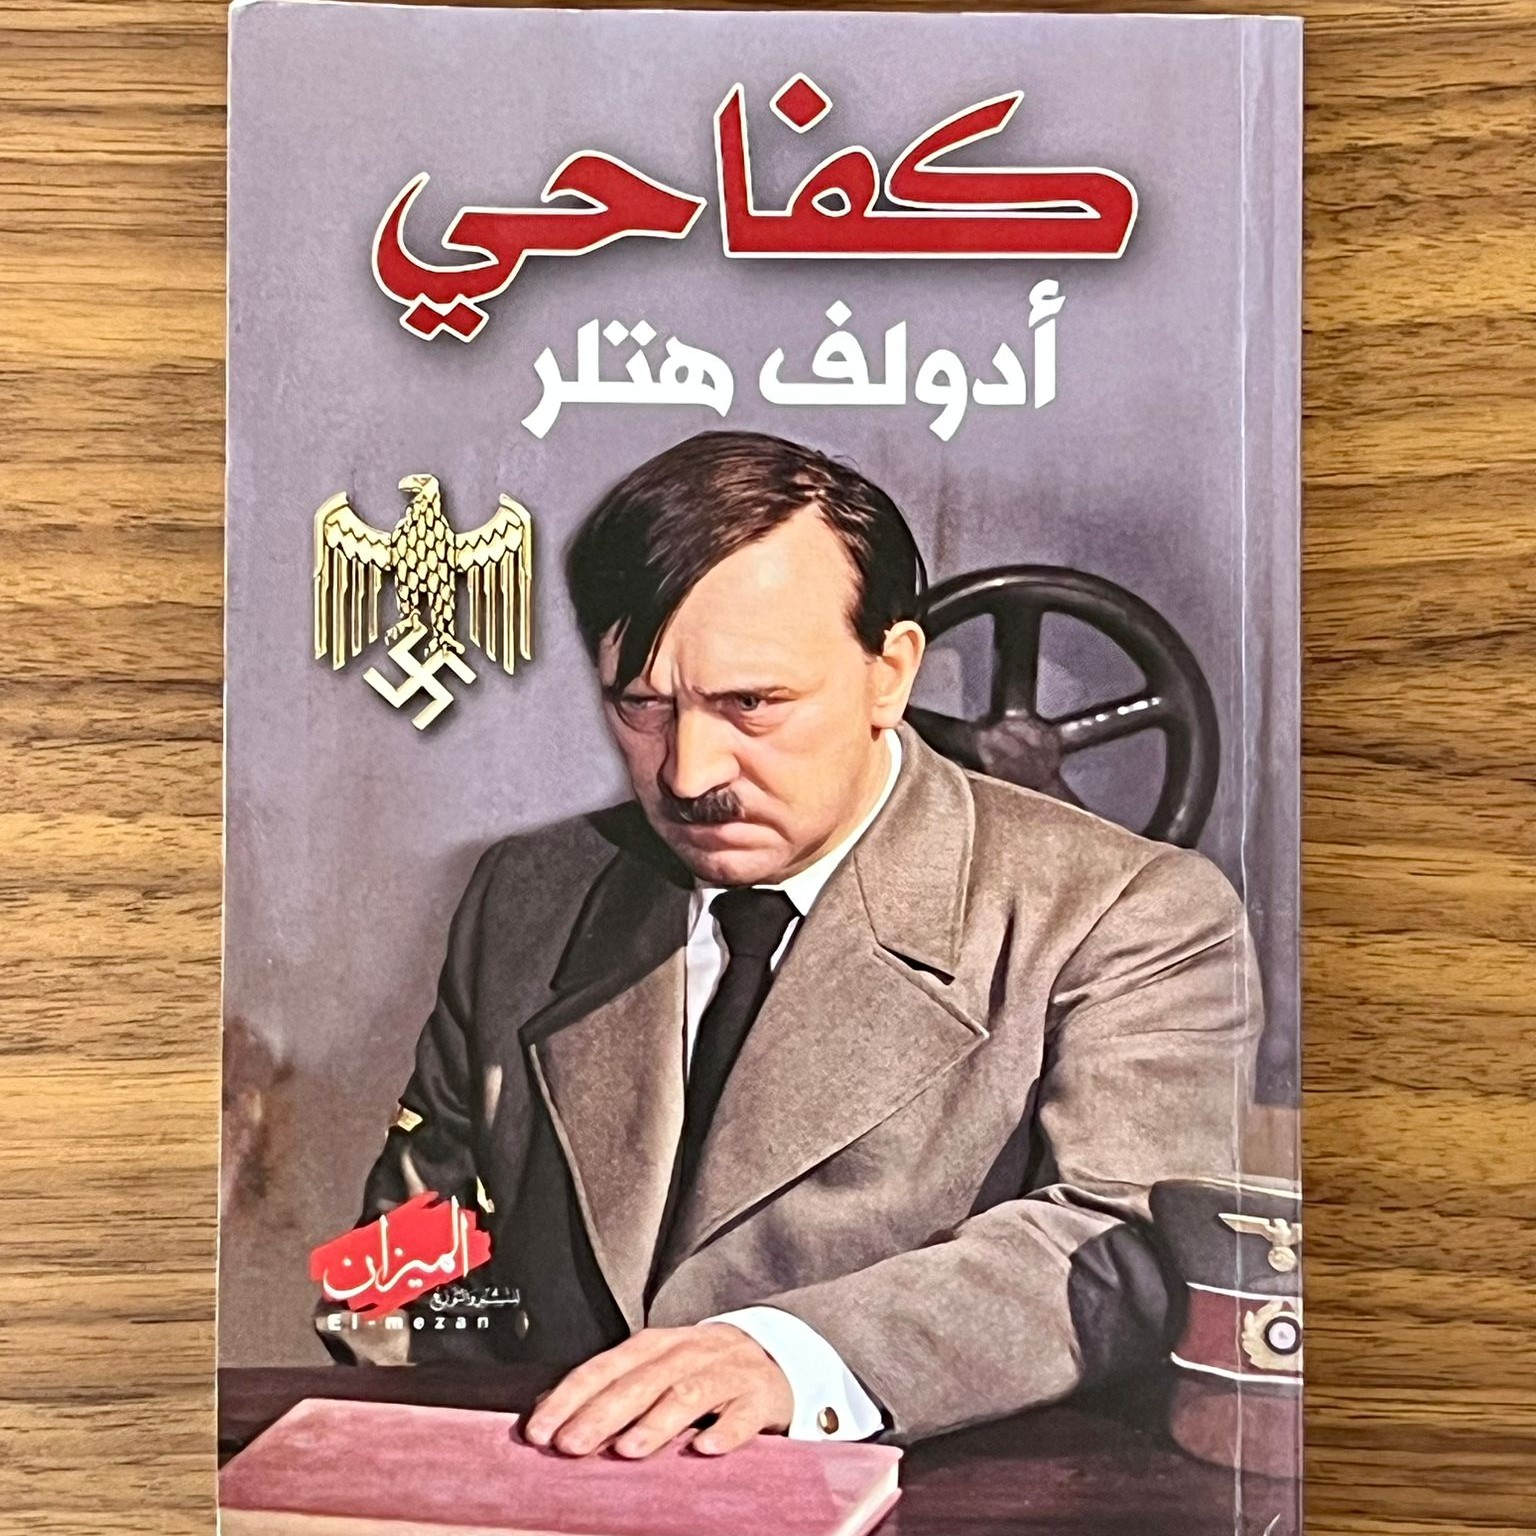 הספר מיין קאמפף מתורגם לערבית (צילום: בית הנשיא)